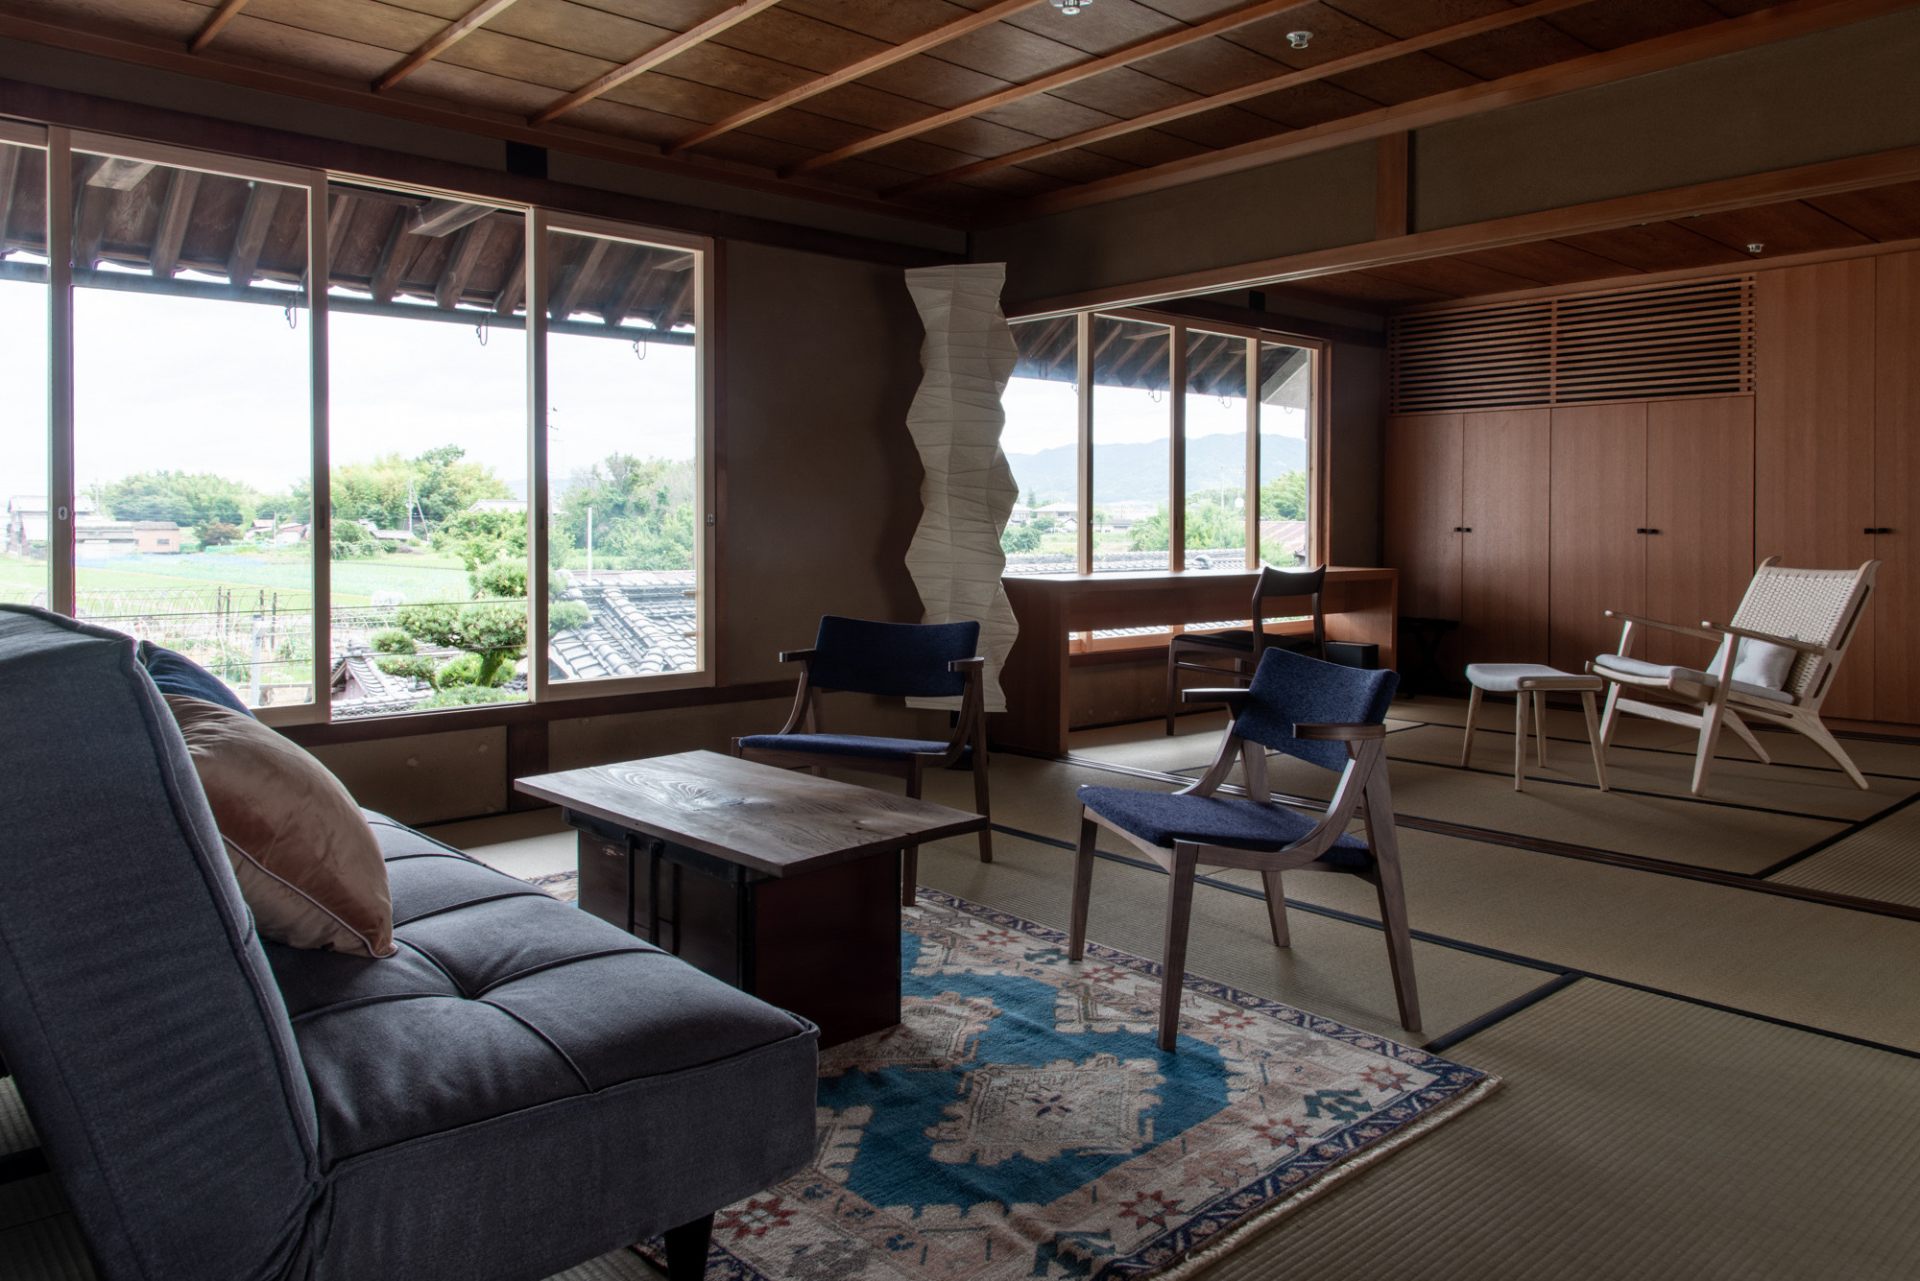 Rénové dans un espace confortable tout en conservant le style architectural appelé Yamato-mune